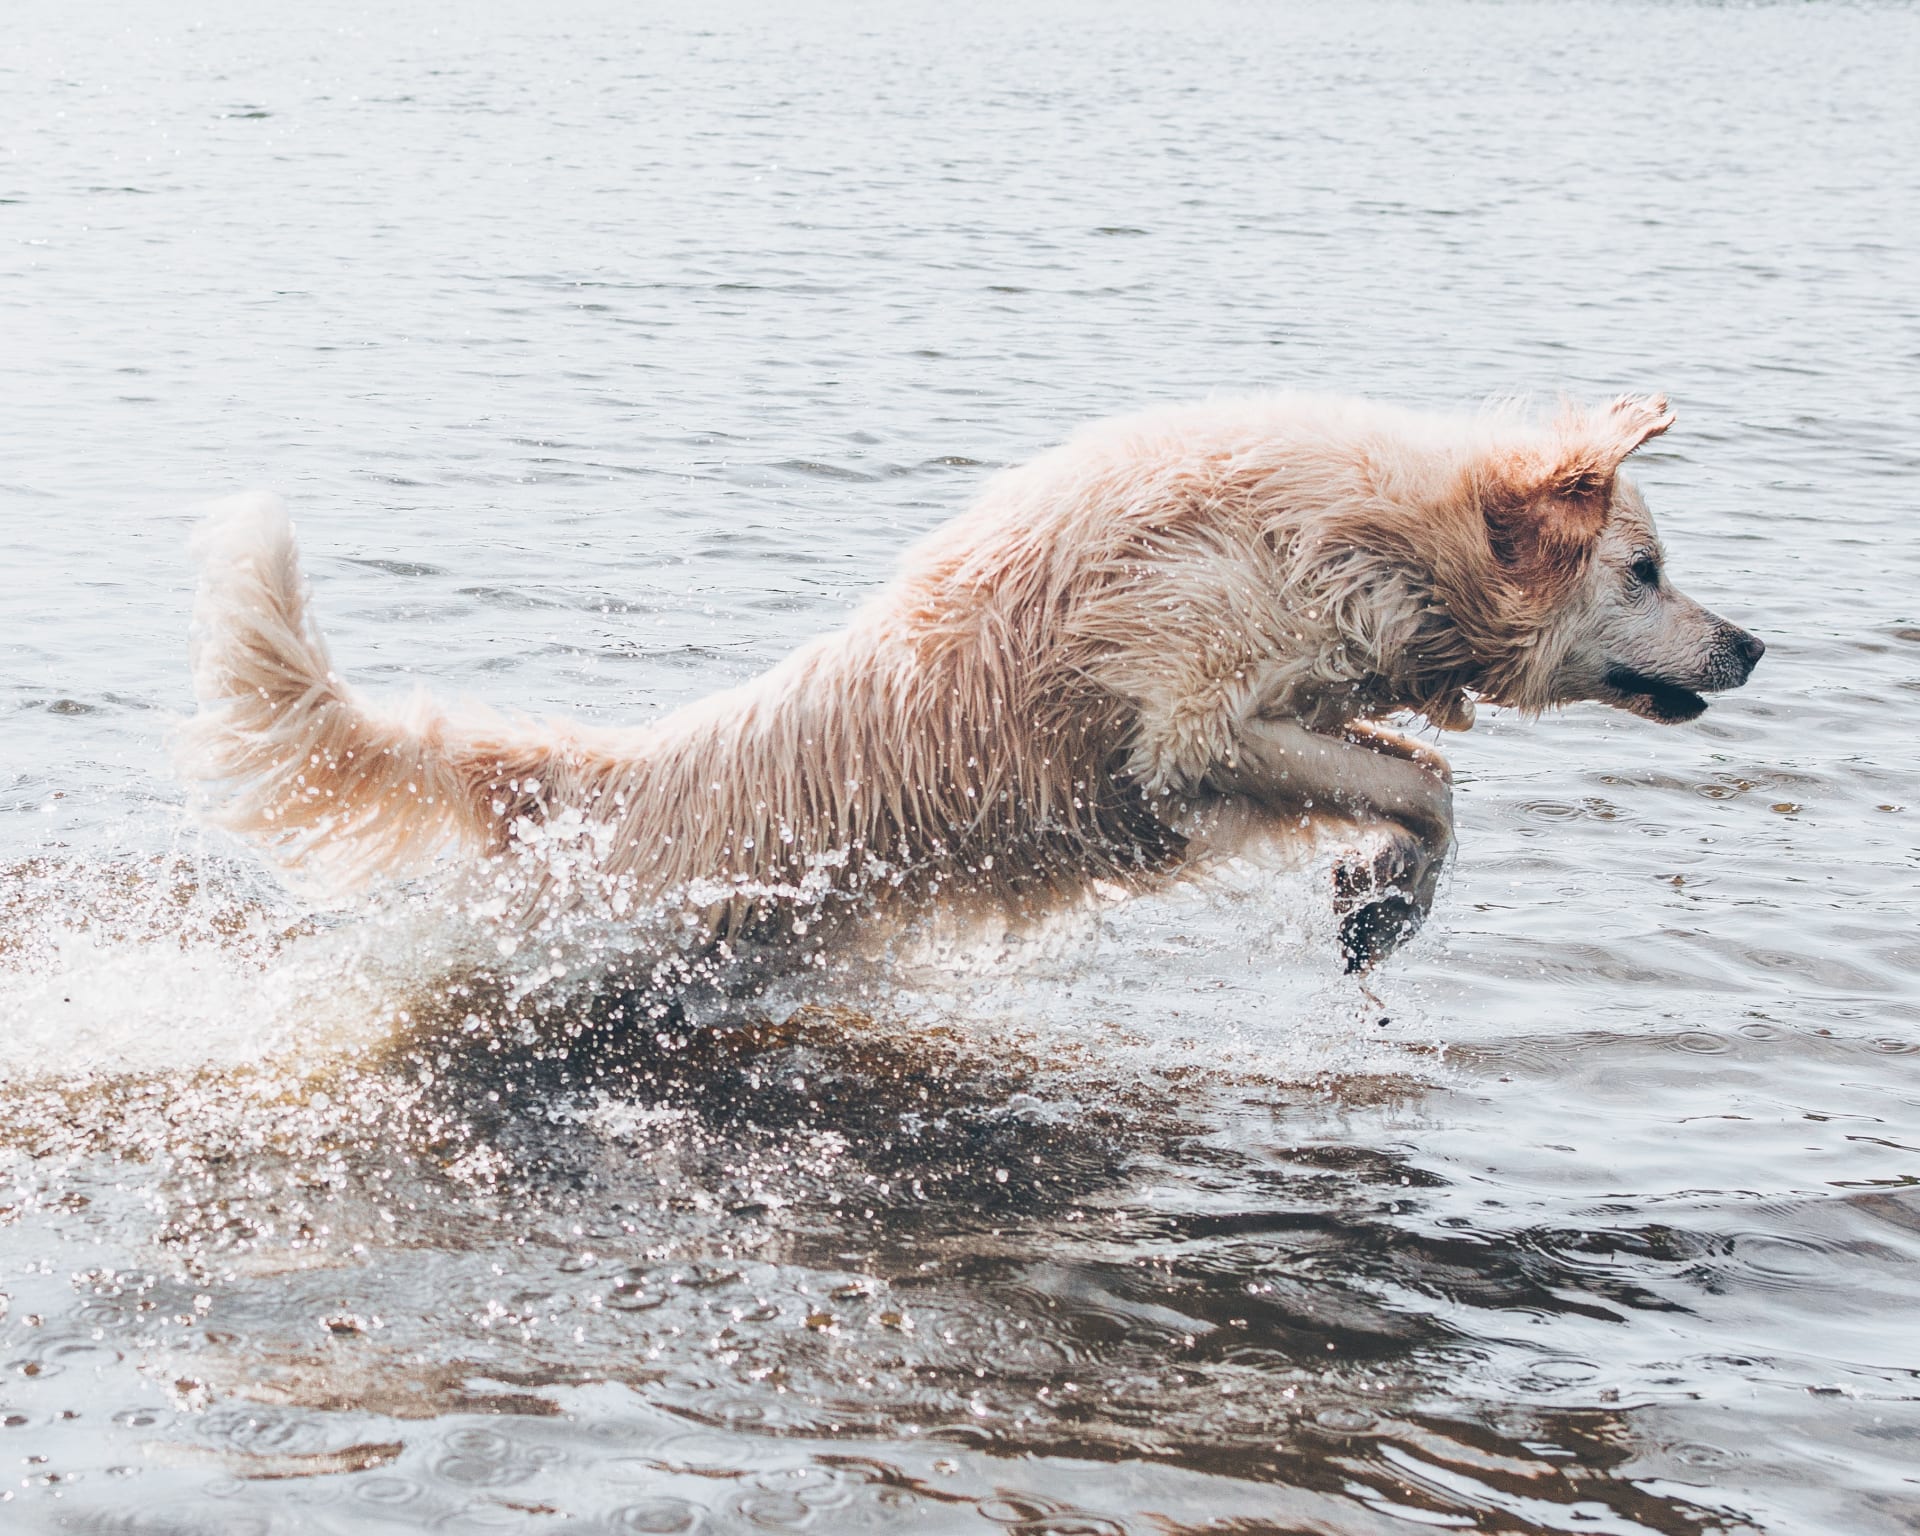 Pobyt u vody je zábava, ale mějte svého psa pod kontrolou